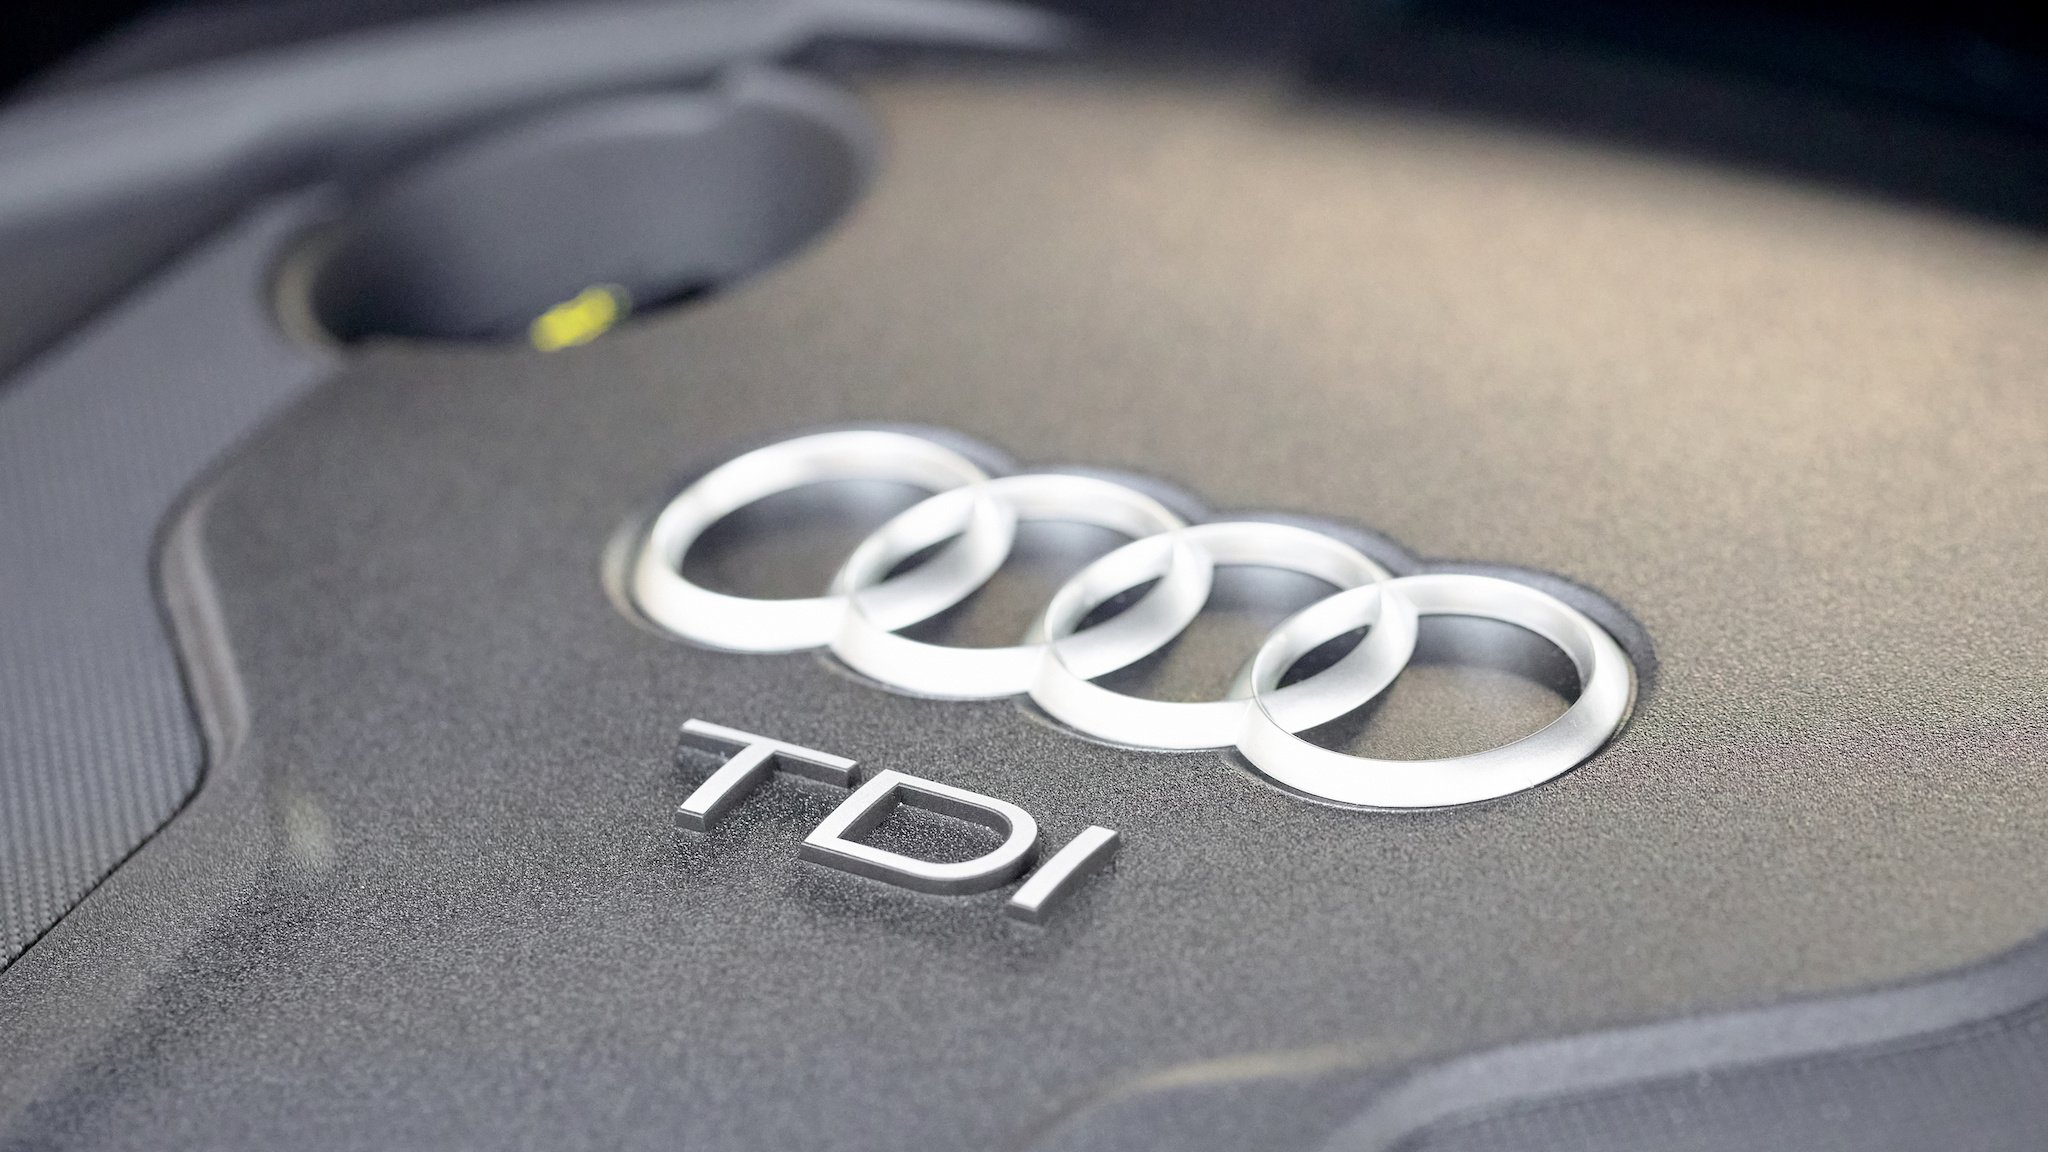 Abdeckung eines Audi-Dieselmotors